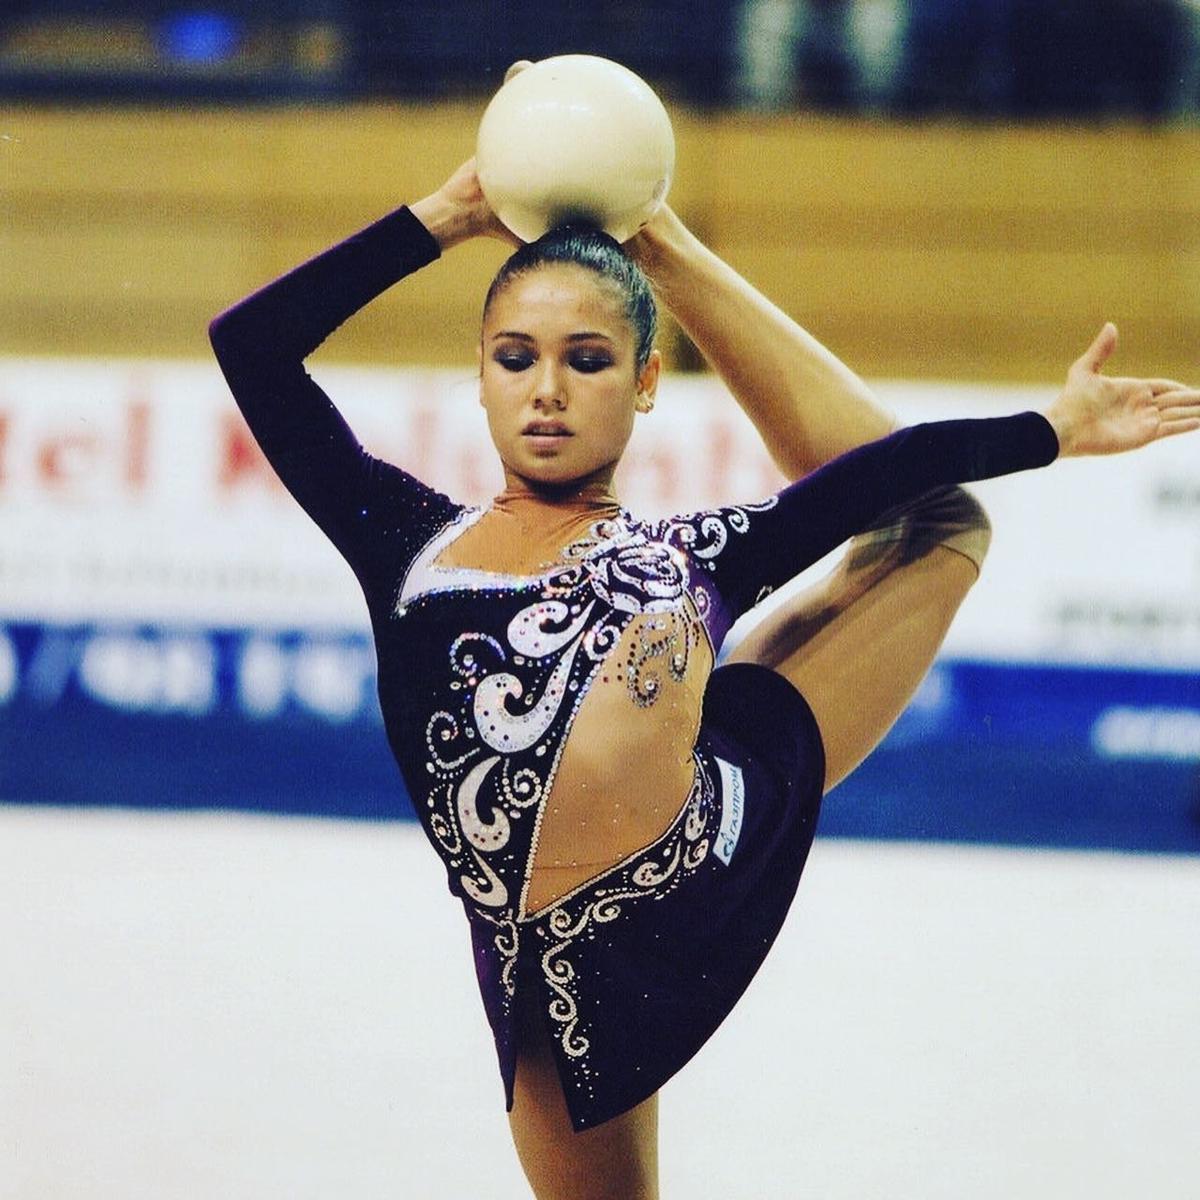 Российская спортсменка, мастер спорта по художественной гимнастике Ляйсан Утяшева. Фото: instagram / liasanutiasheva